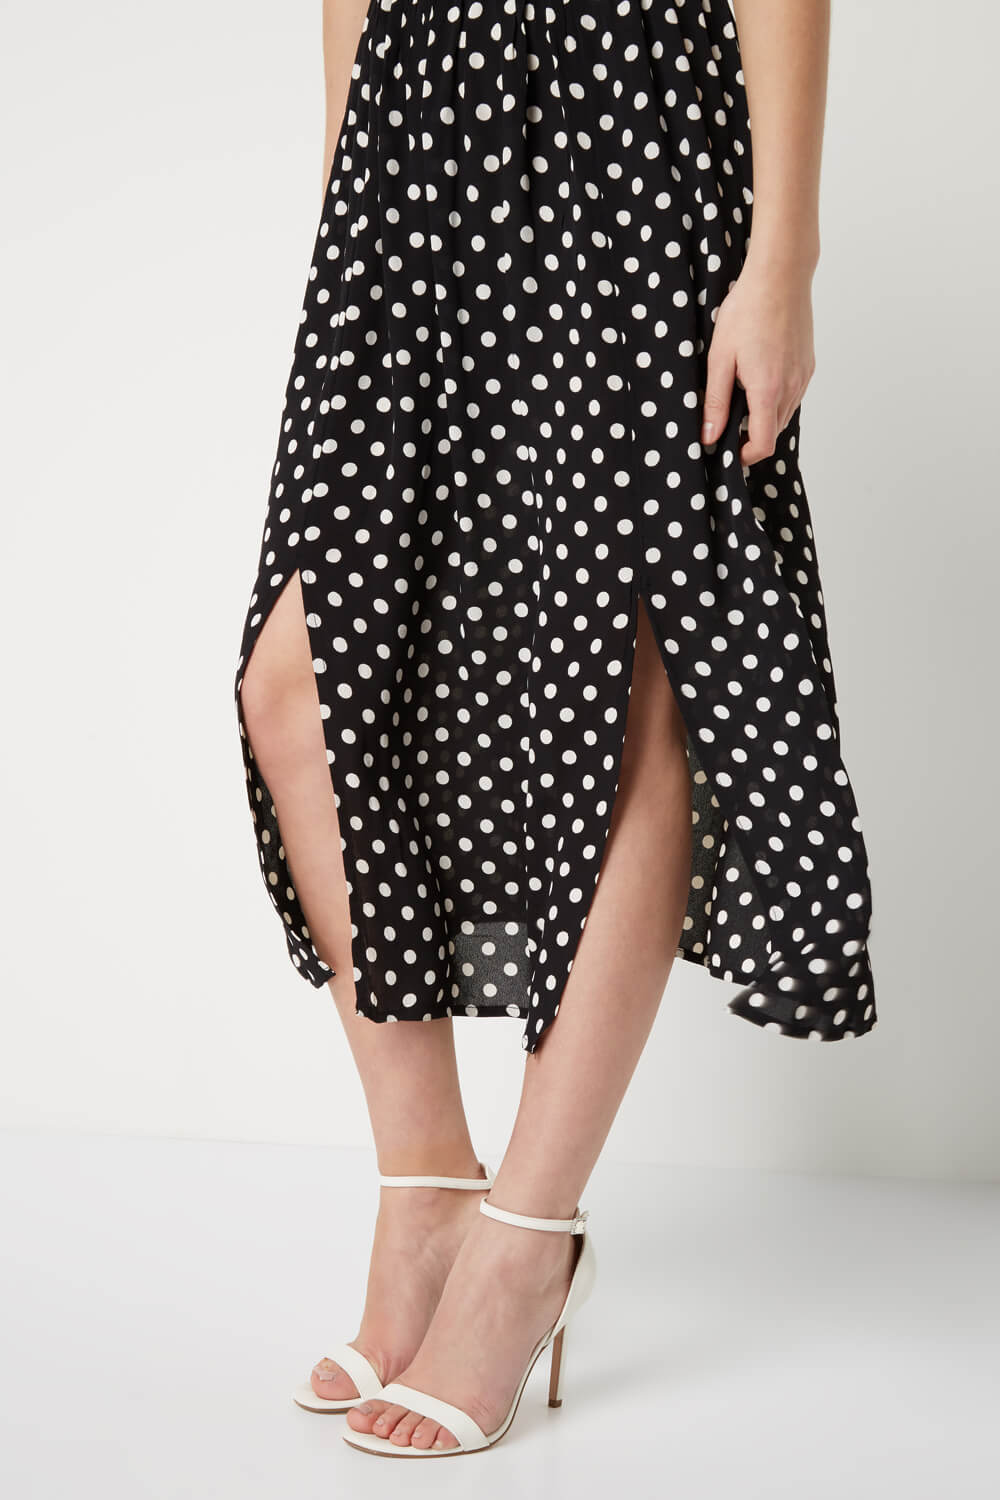 Black Polka Dot Cold Shoulder Dress, Image 3 of 4